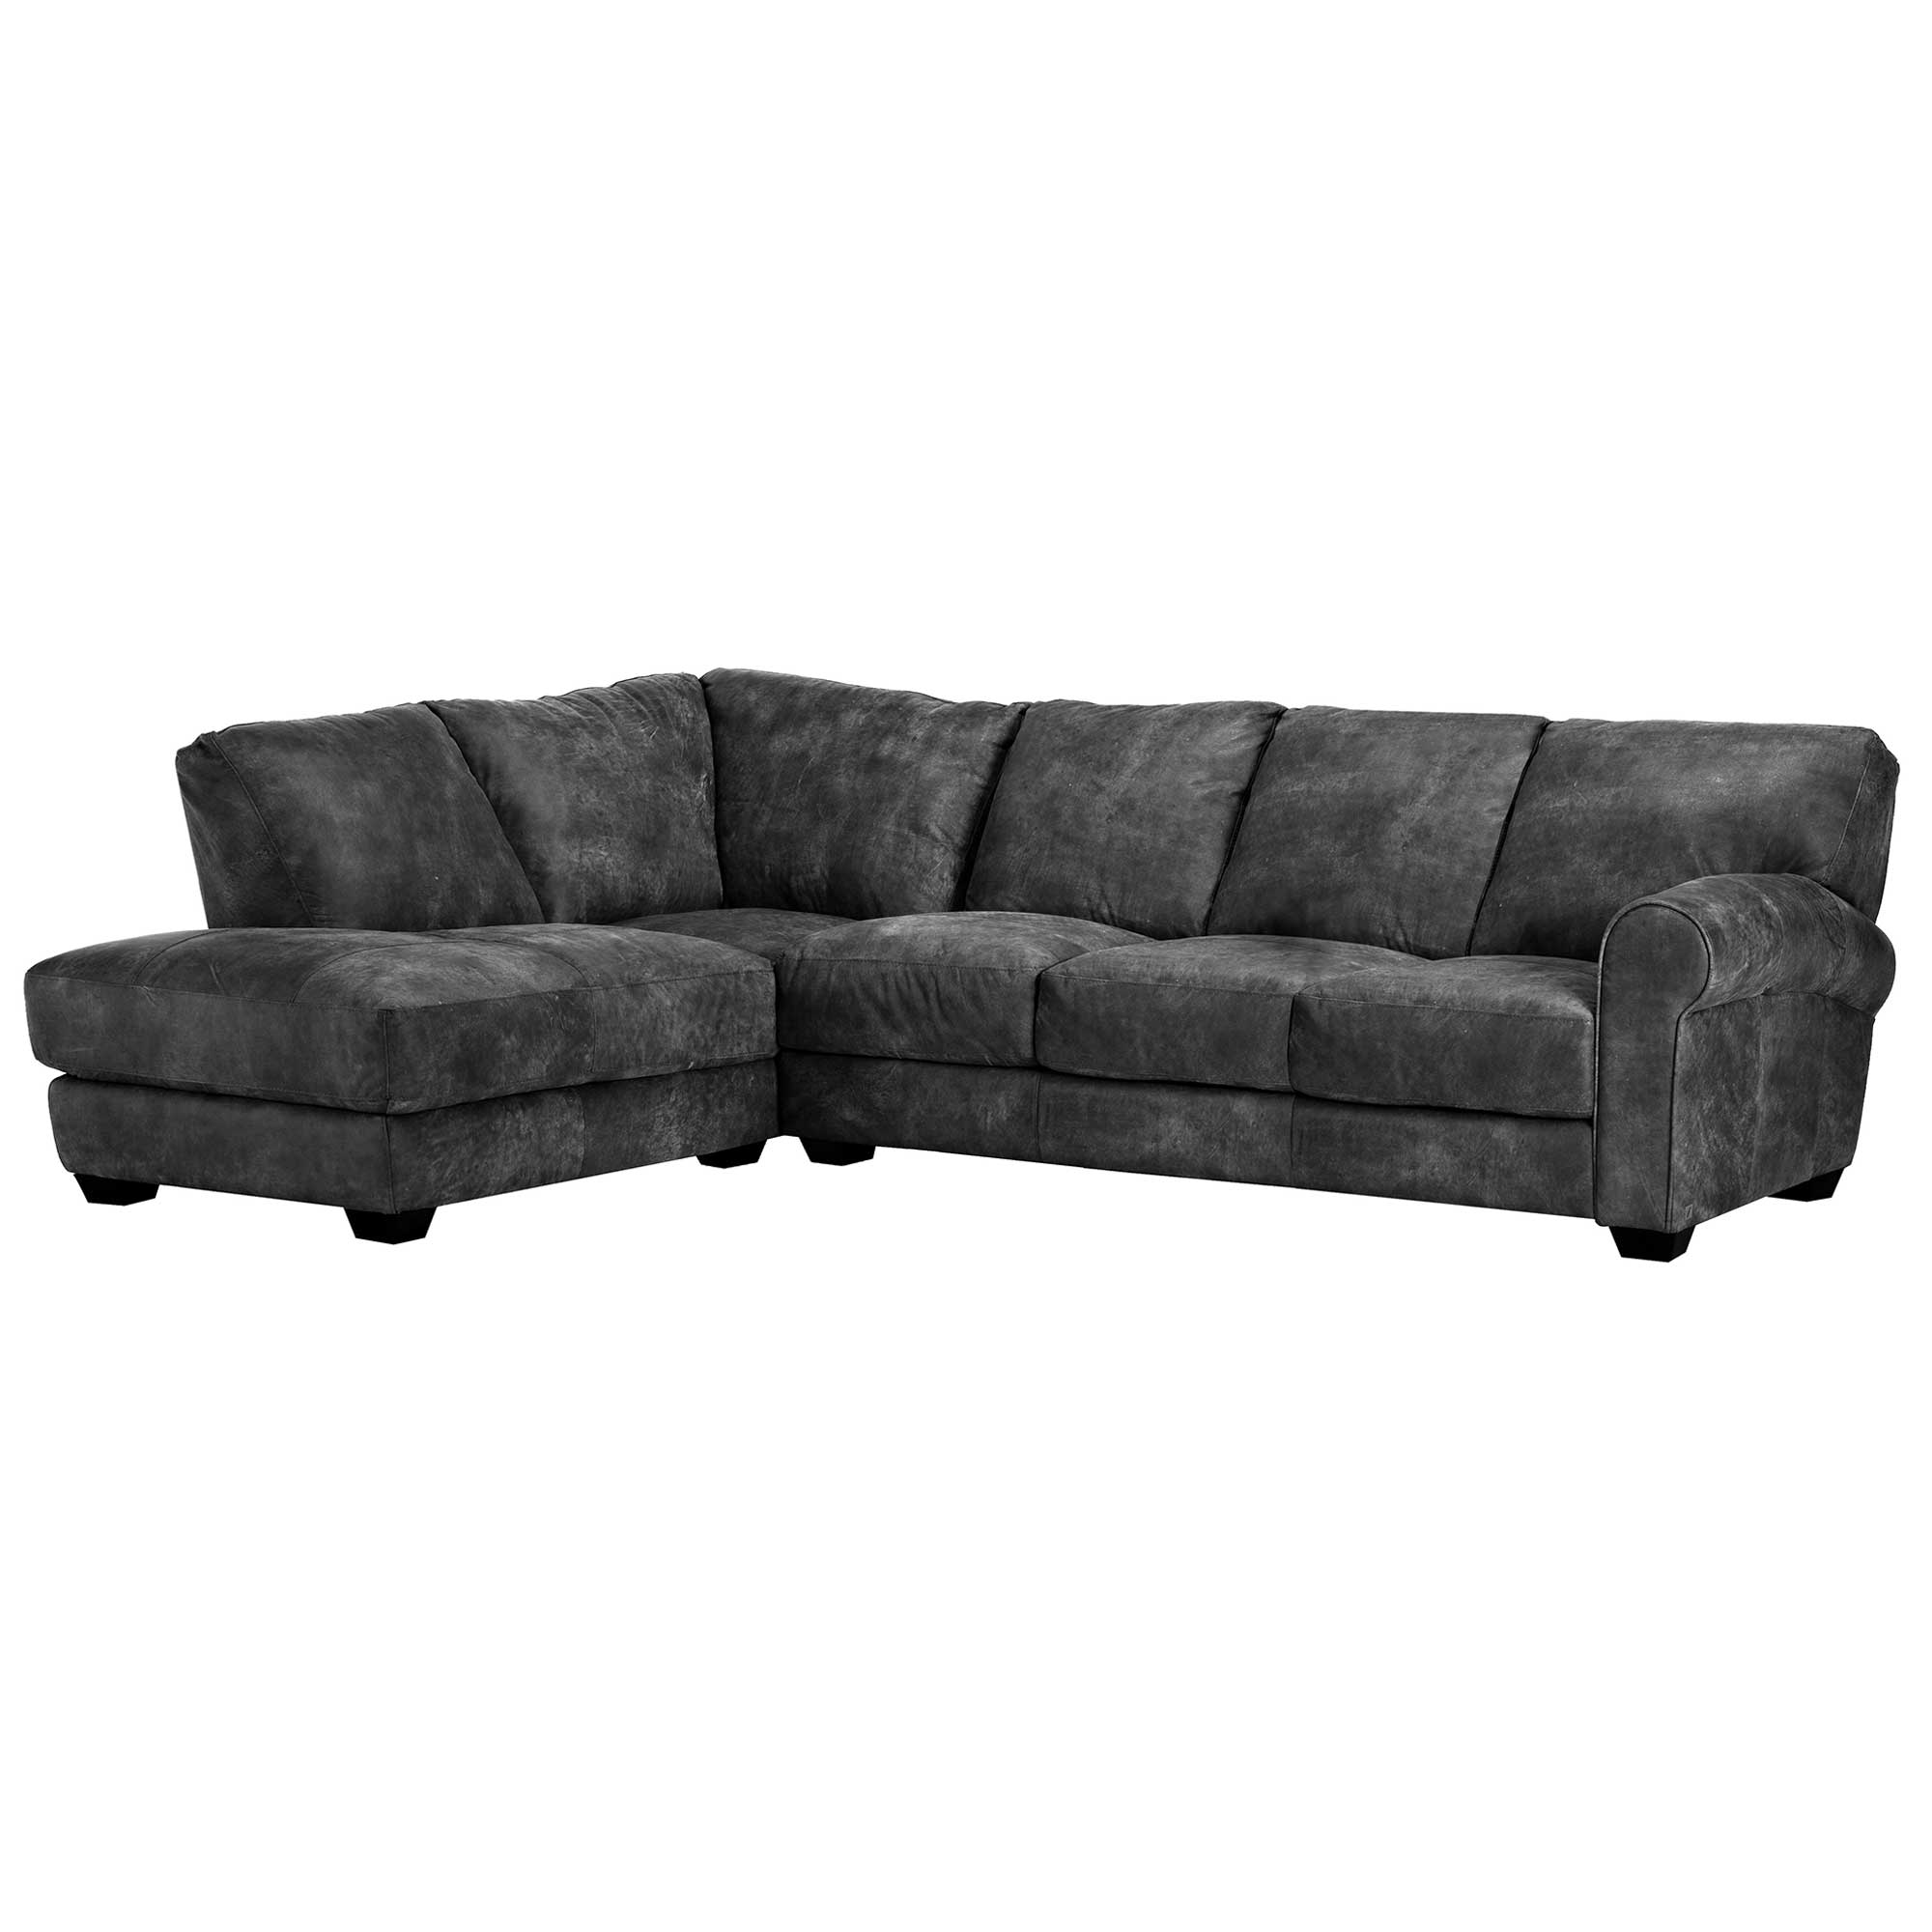 Houston Large Corner Sofa Chaise Left, Grey Leather | Barker & Stonehouse